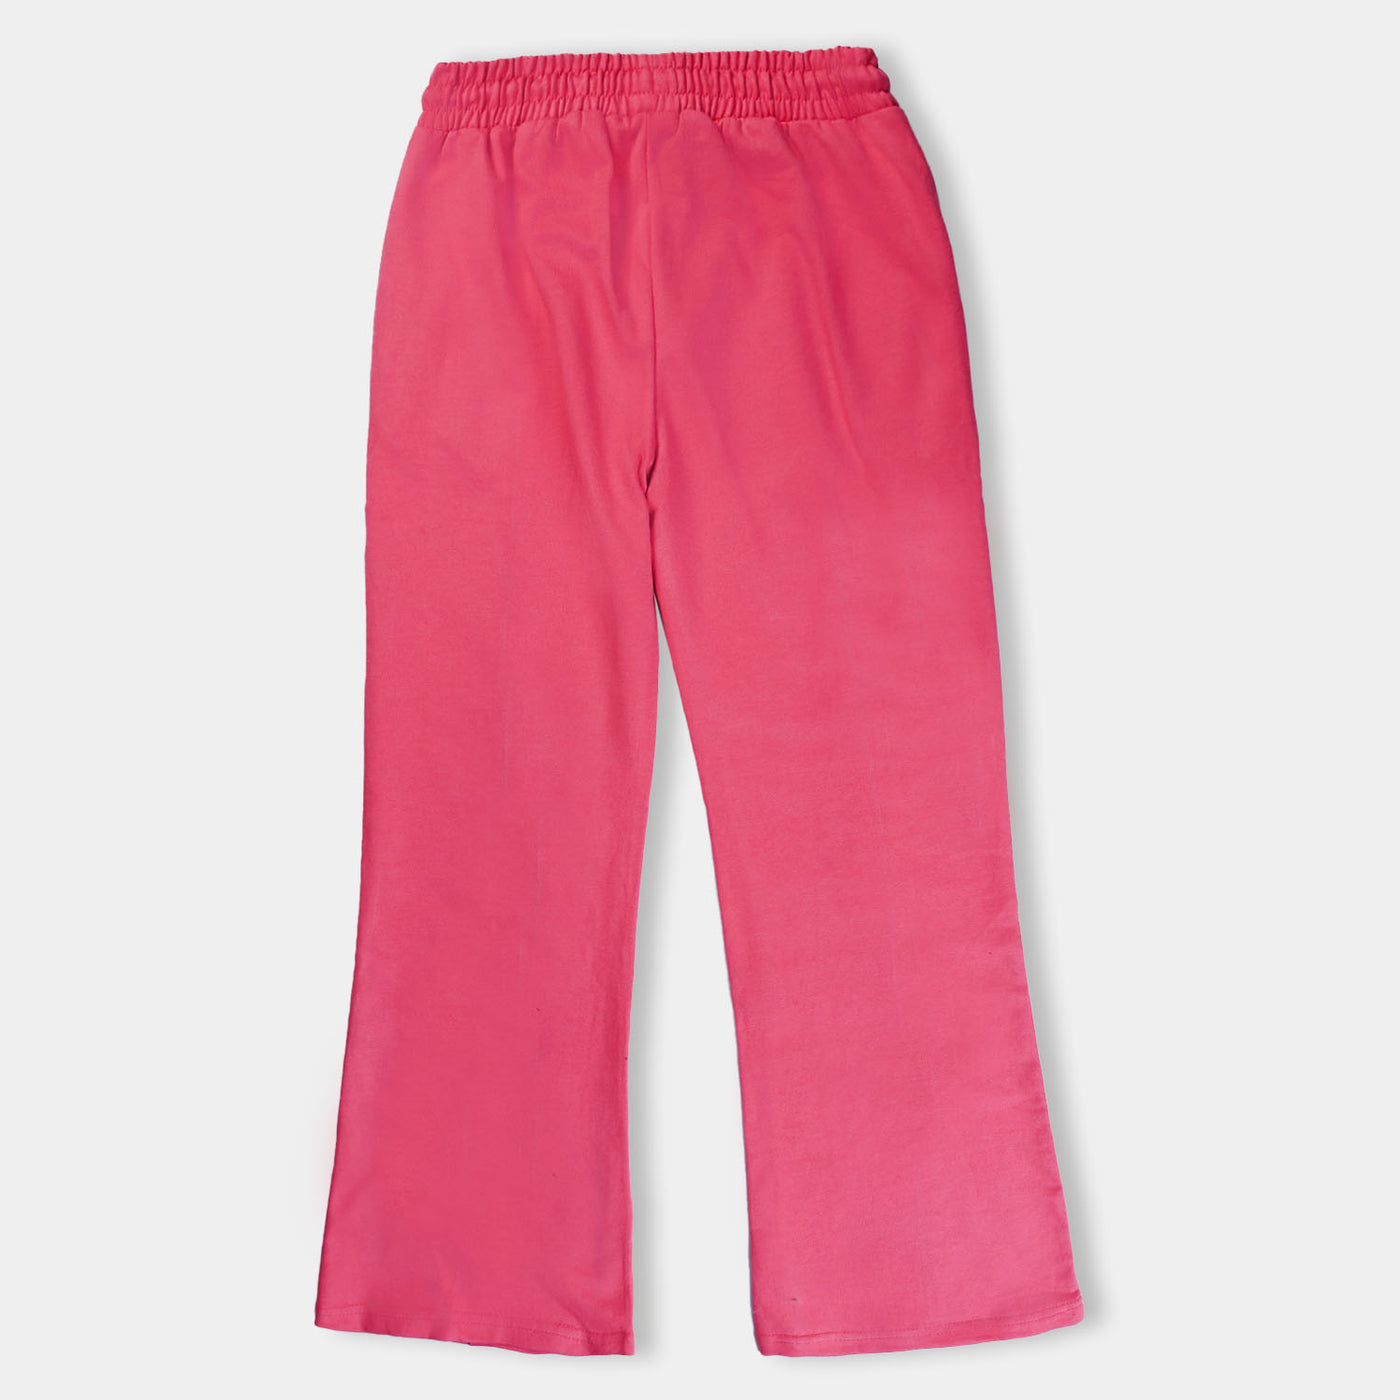 Teens Girls Fleece Knitted Trouser Hot Pink